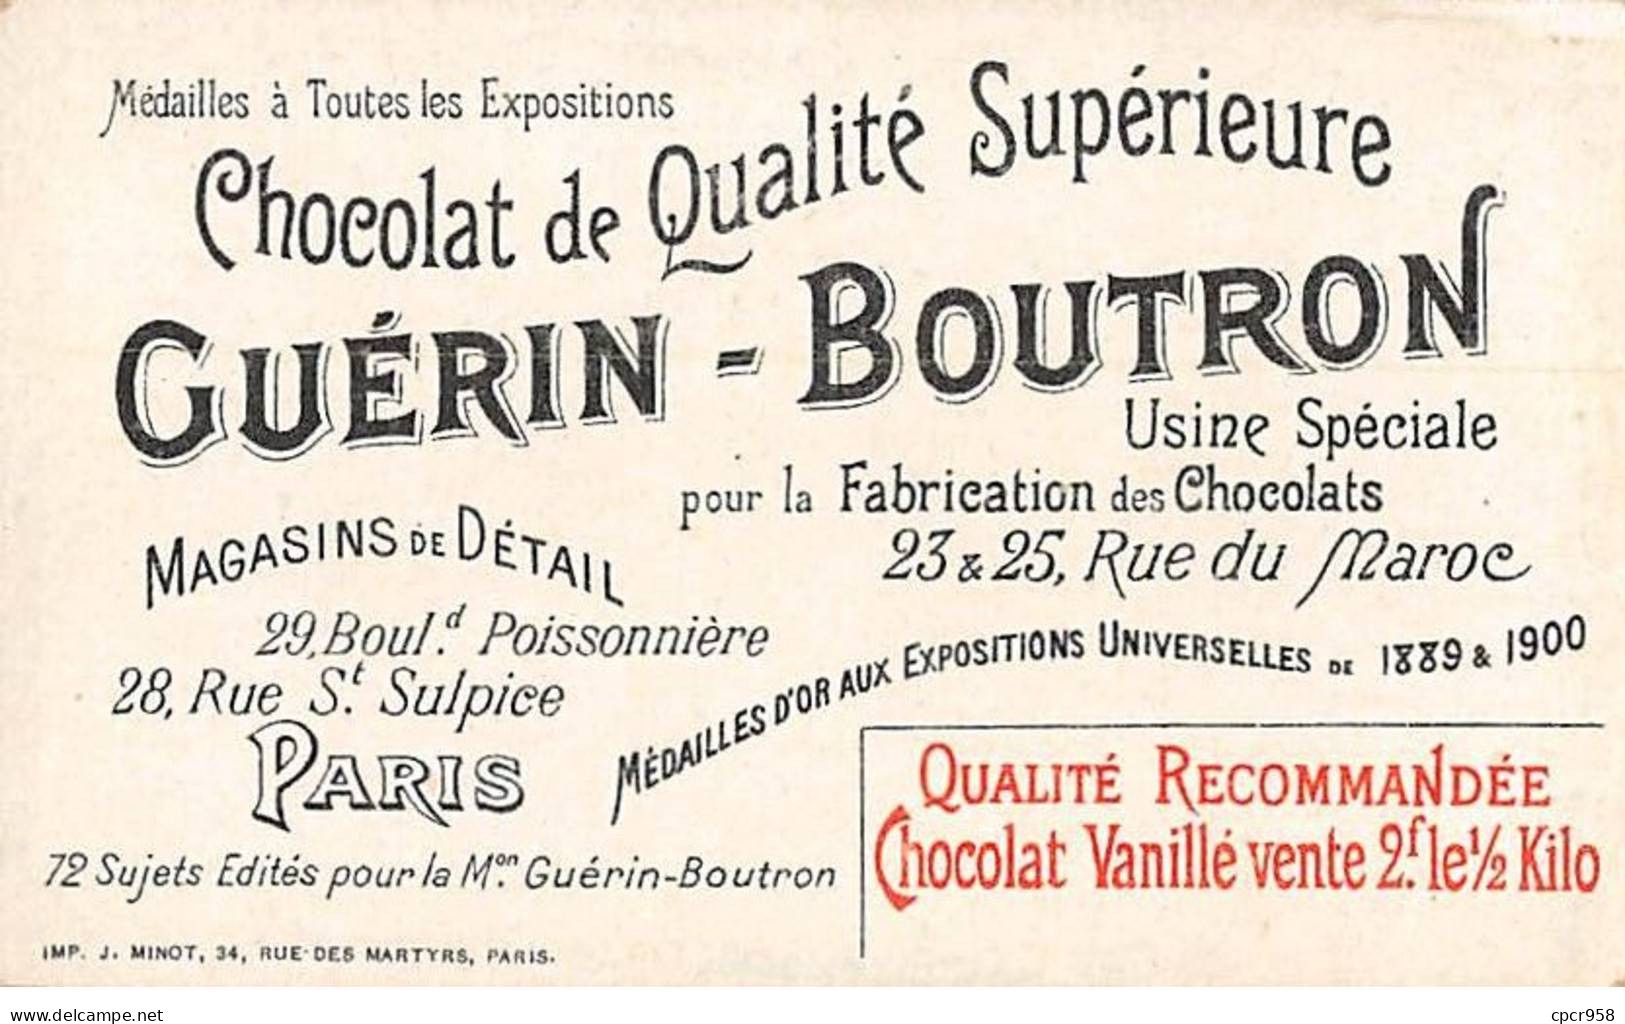 Chromos -COR10510 -Chocolat Guérin-Boutron-Le Théâtre à Travers Les âges-Théâtre Des Funambules- Acteurs- 6x10 Cm Env. - Guérin-Boutron